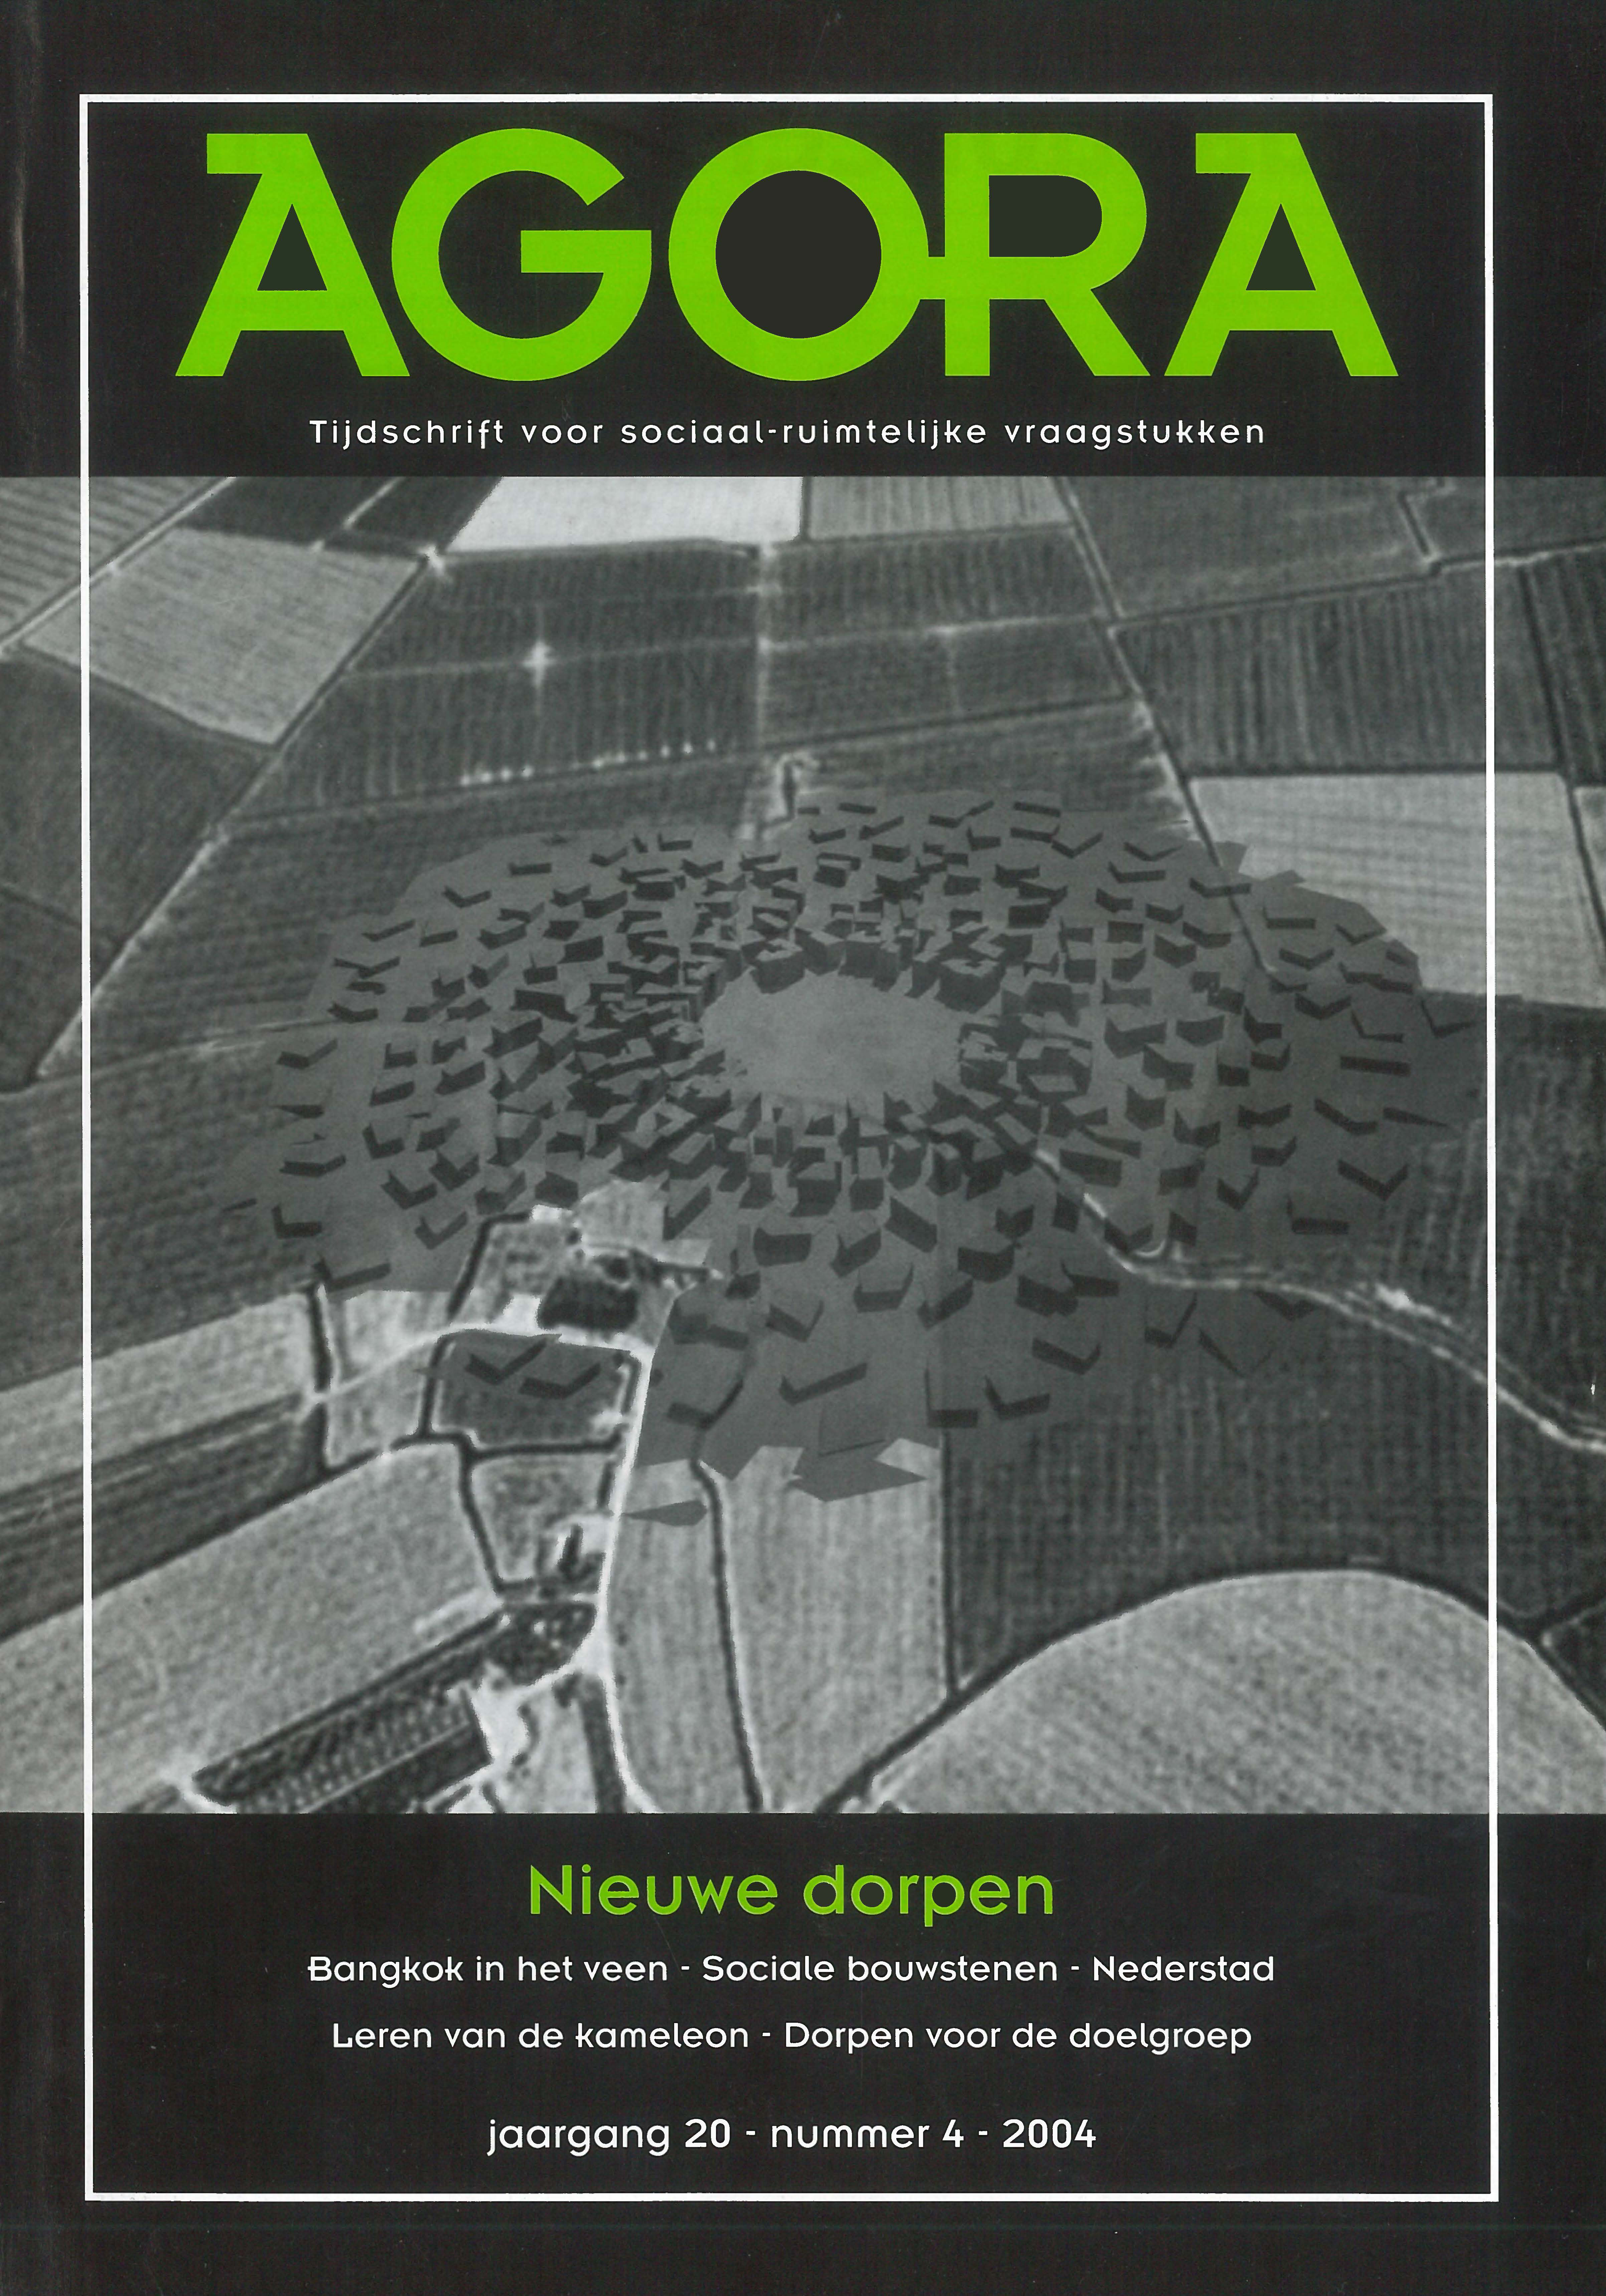 Volume 20 • Issue 4 • 2004 • Nieuwe dorpen